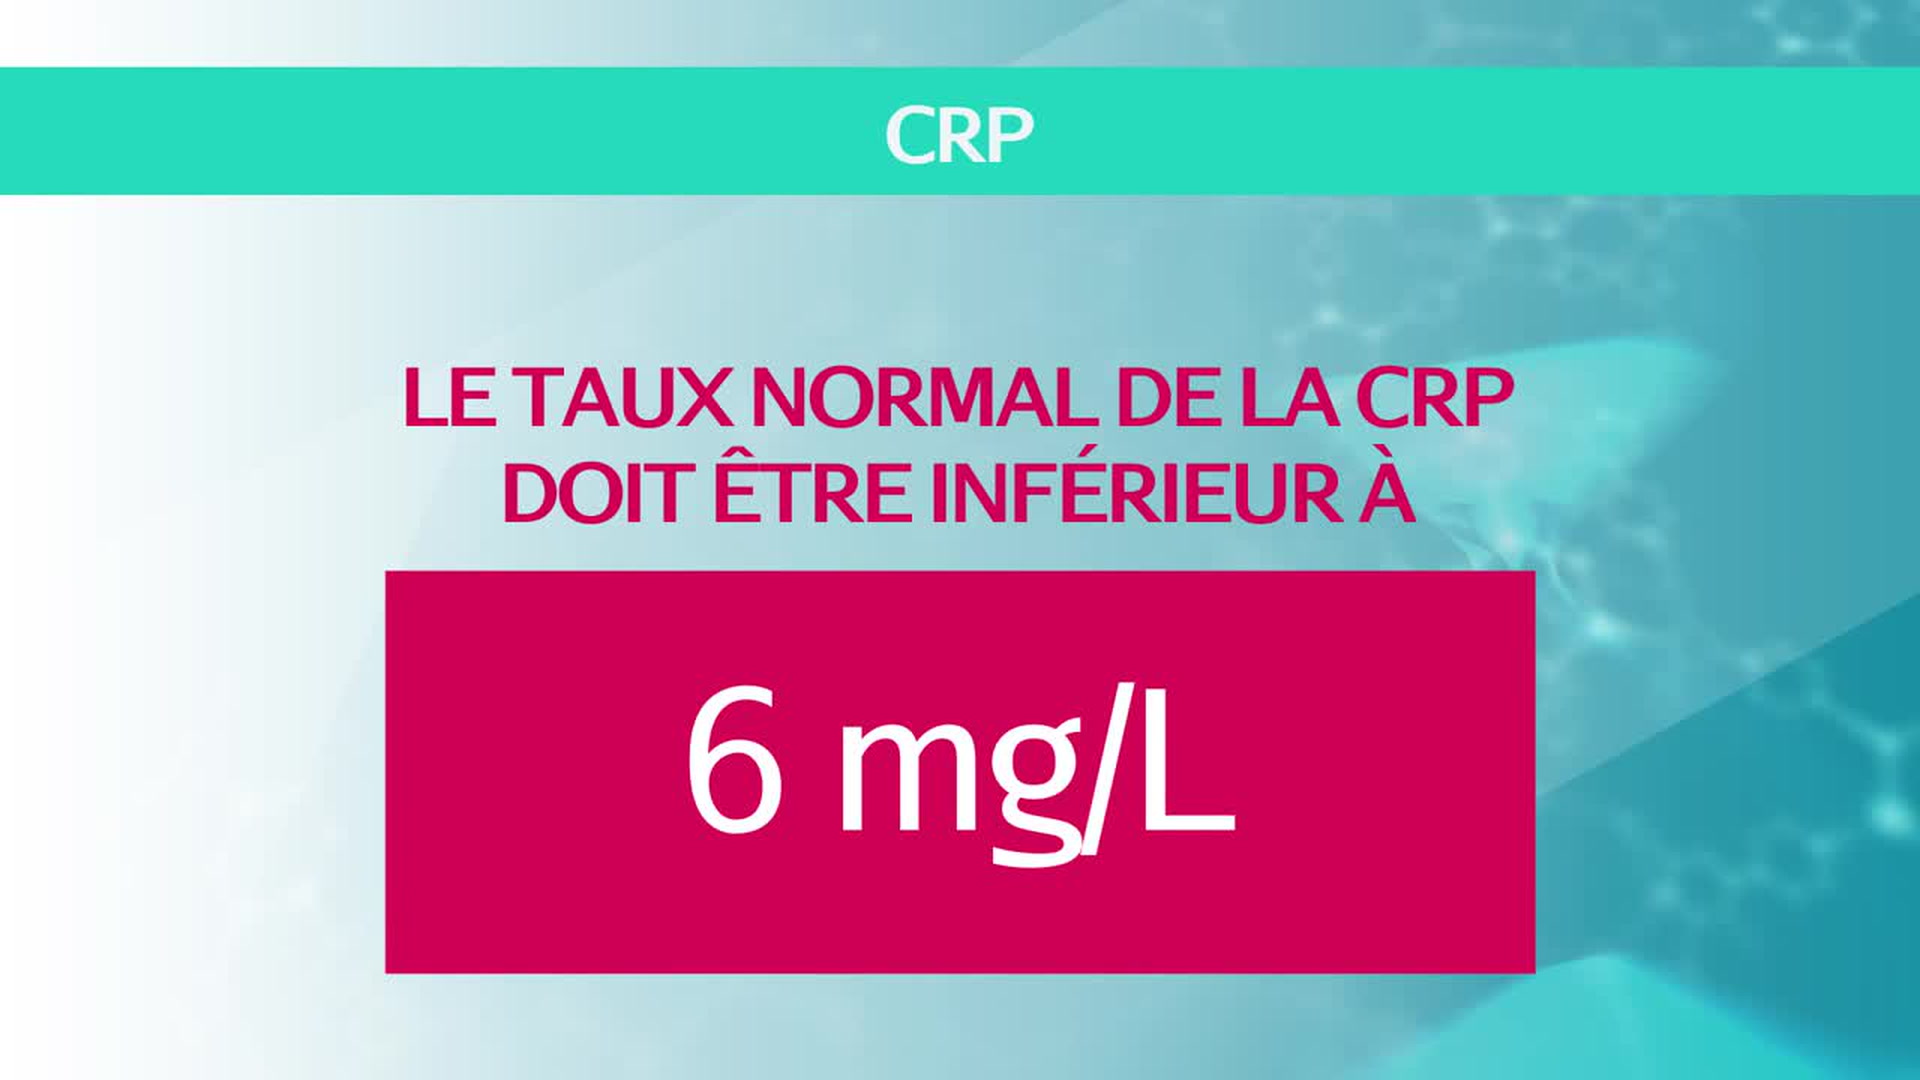 Protéine C-réactive (CRP) : norme, taux élevé, inquiétant ?